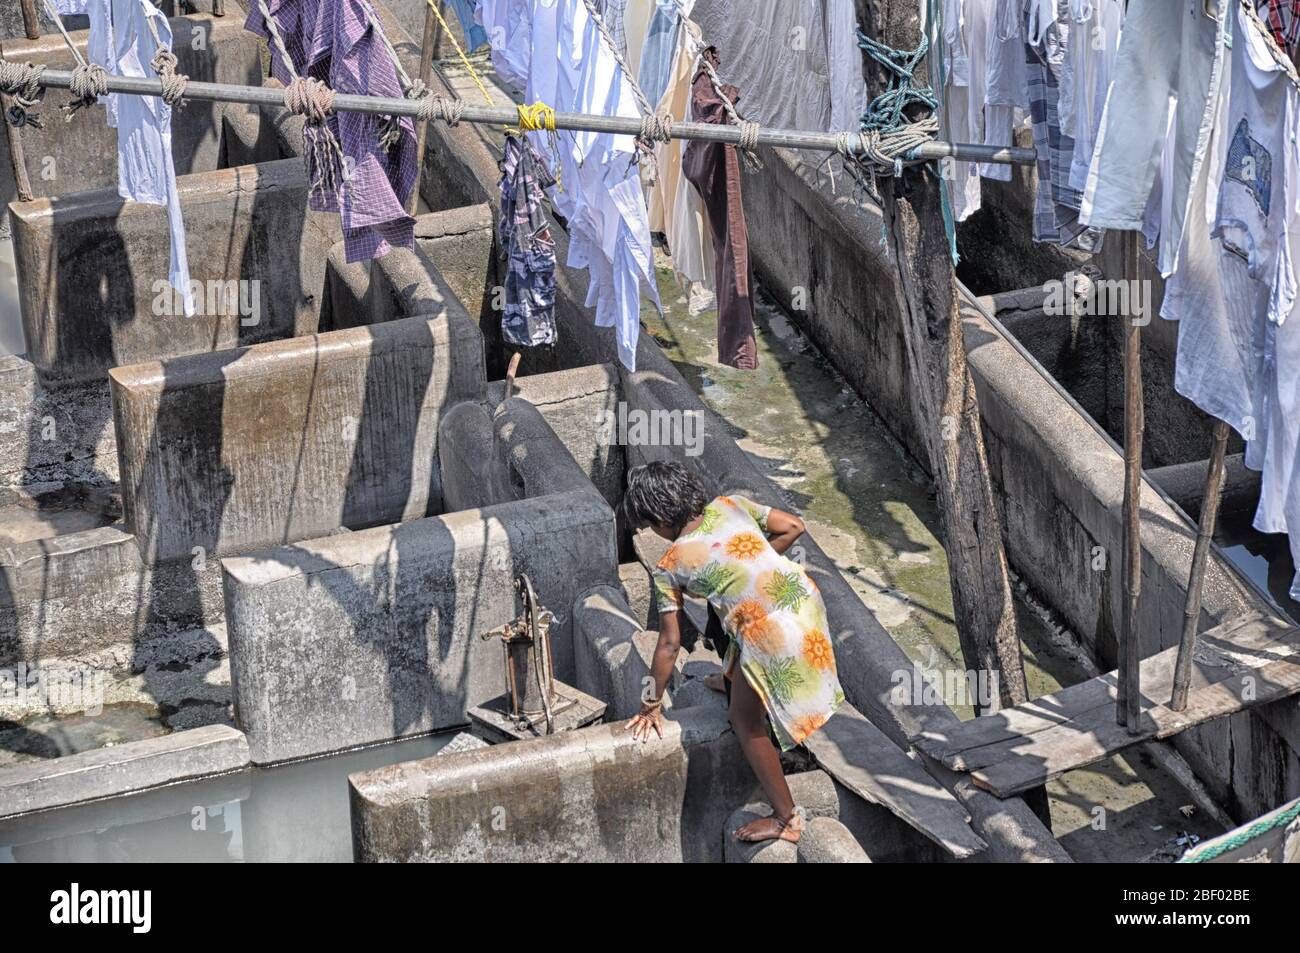 Mumbai, India-marzo 03,2013: Lavandería Dhobi Ghat en Mumbai, la gente lava ropa en una calle de la ciudad. El lavado más grande de la India. Foto de stock